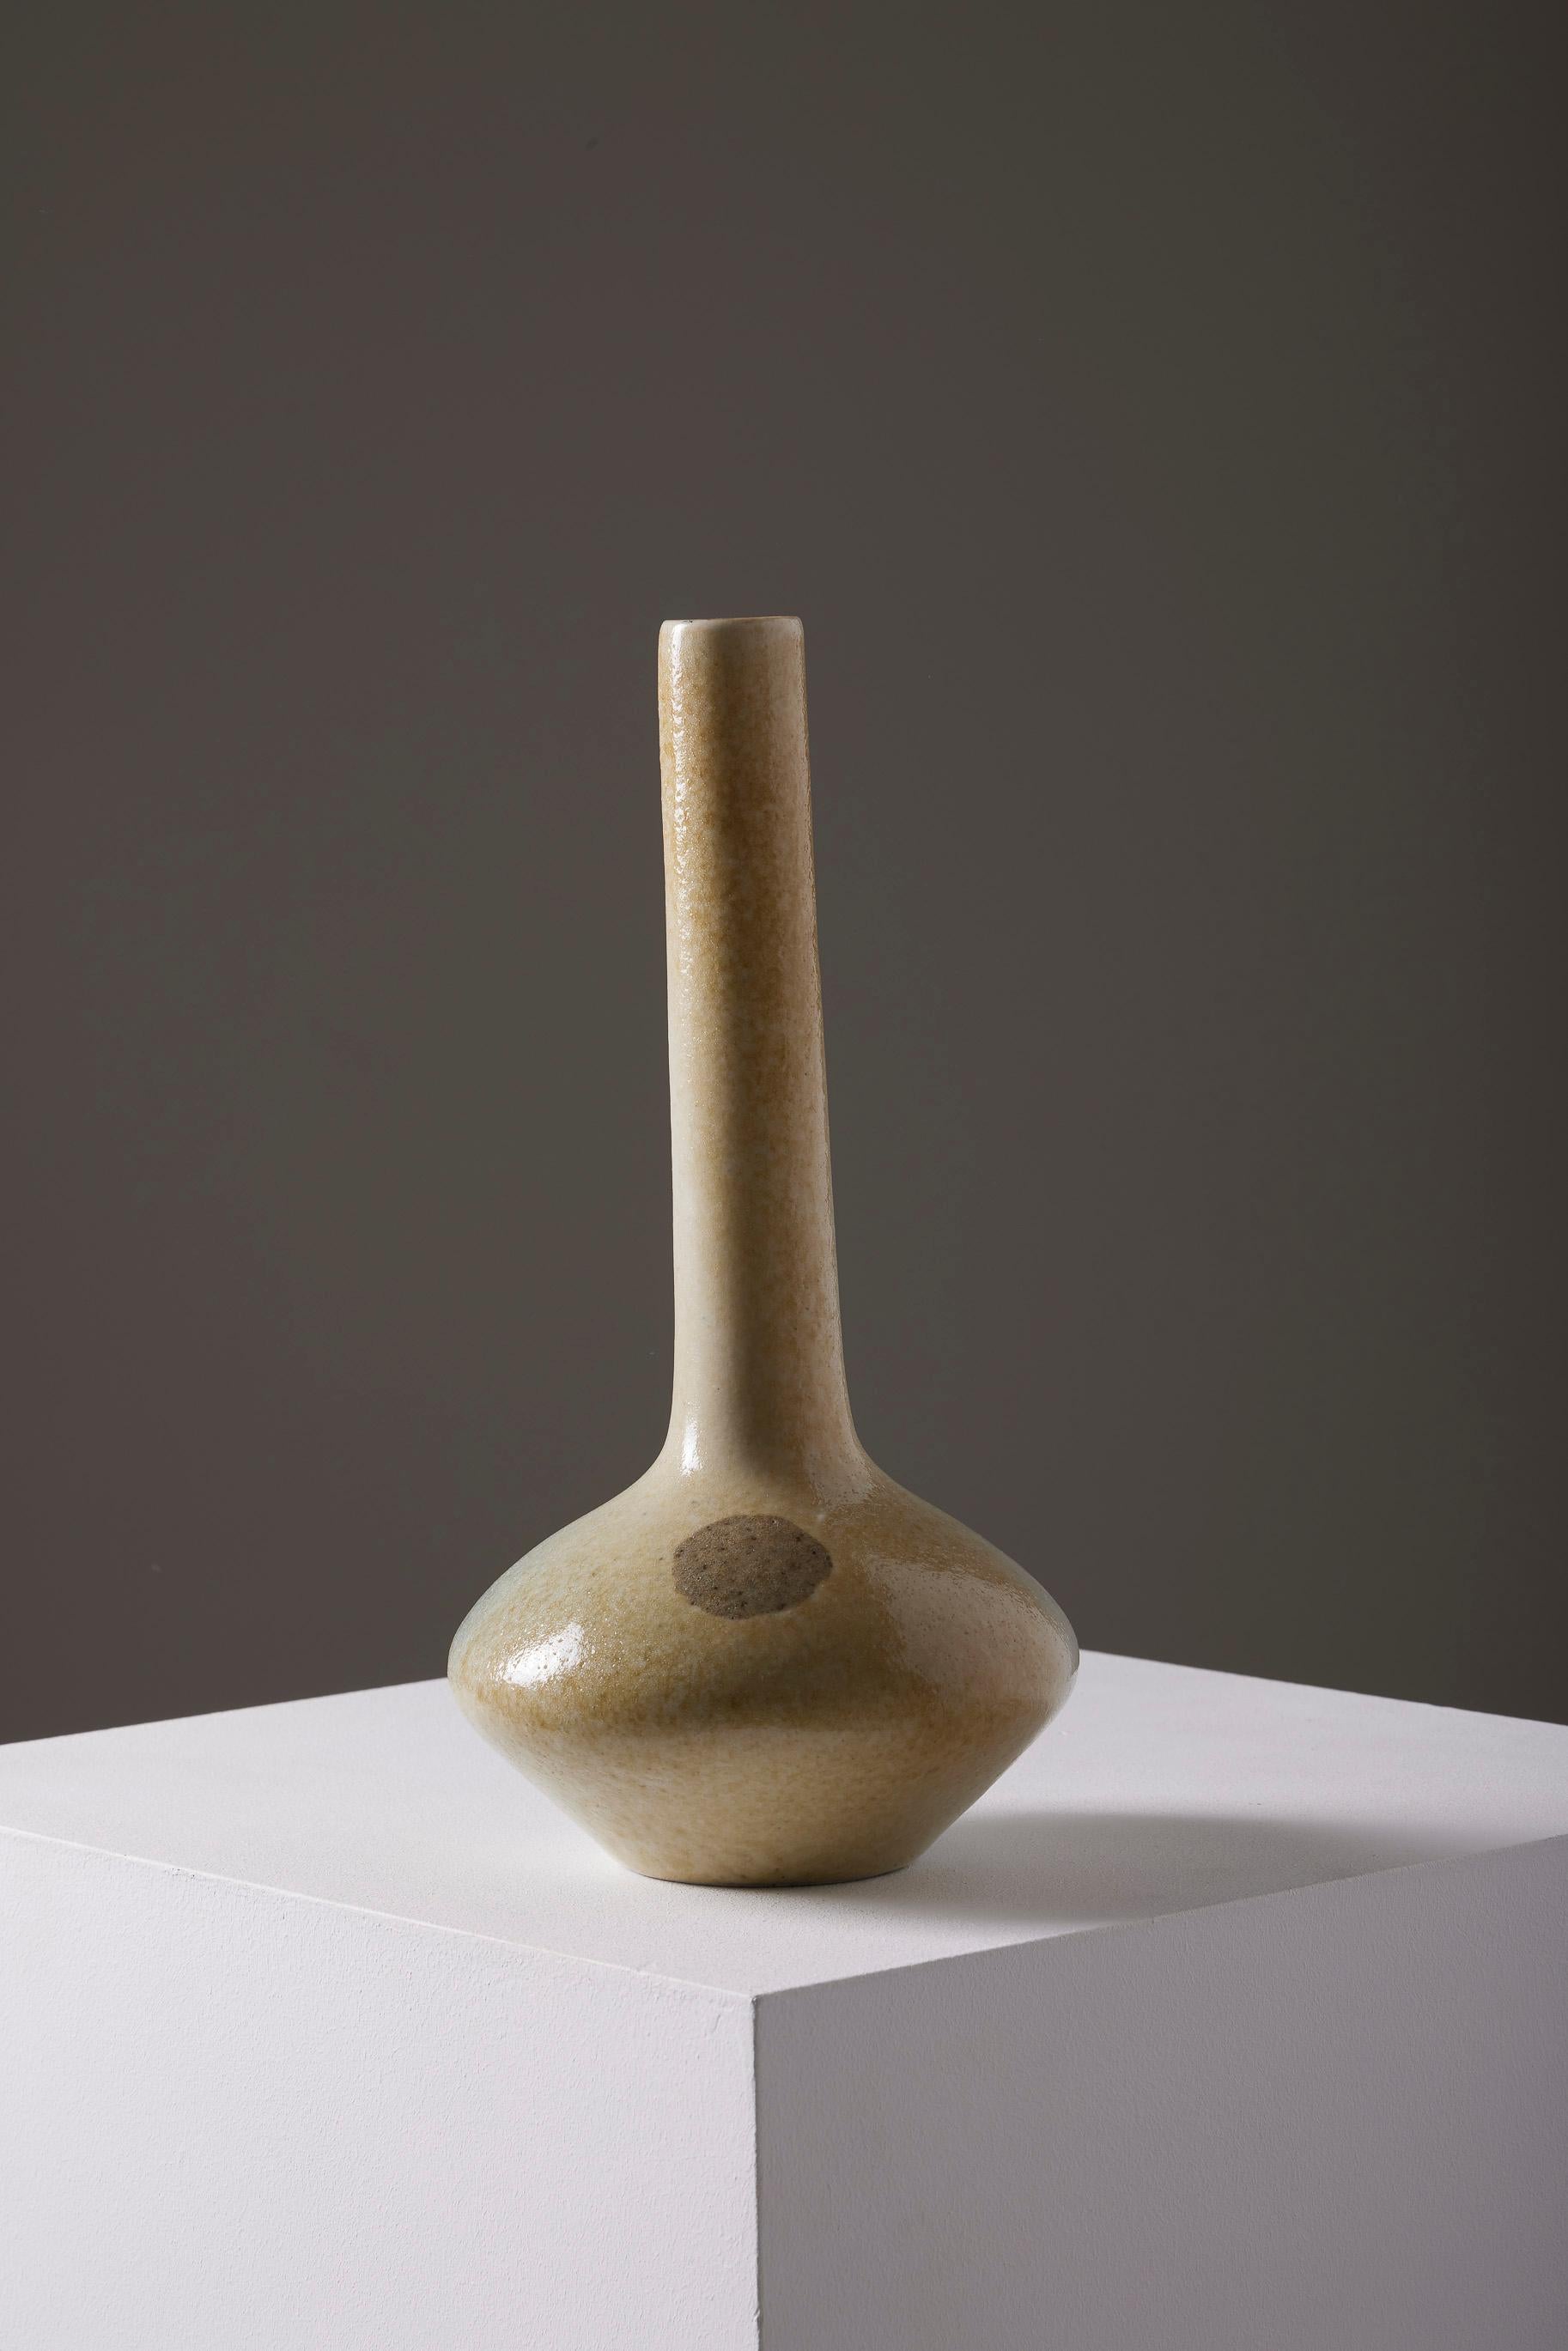 Vase en céramique dans les tons gris/beige du designer anglais Tim Orr (1940-1989) dans les années 1970. Estampillé sur la face inférieure. Très bon état.
LP1858